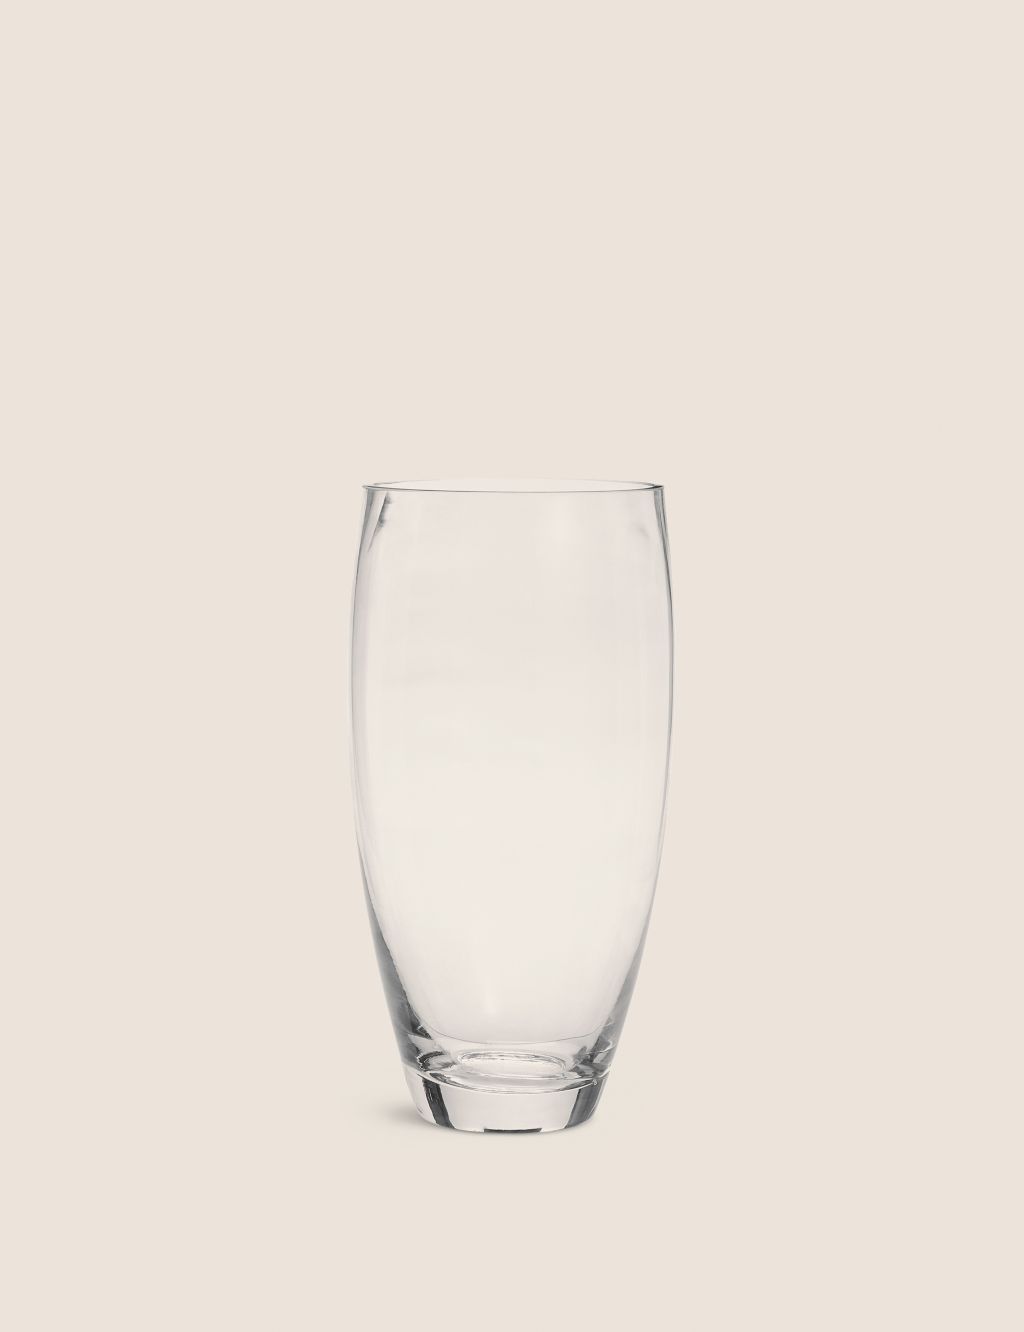 Medium Poppy Vase image 1